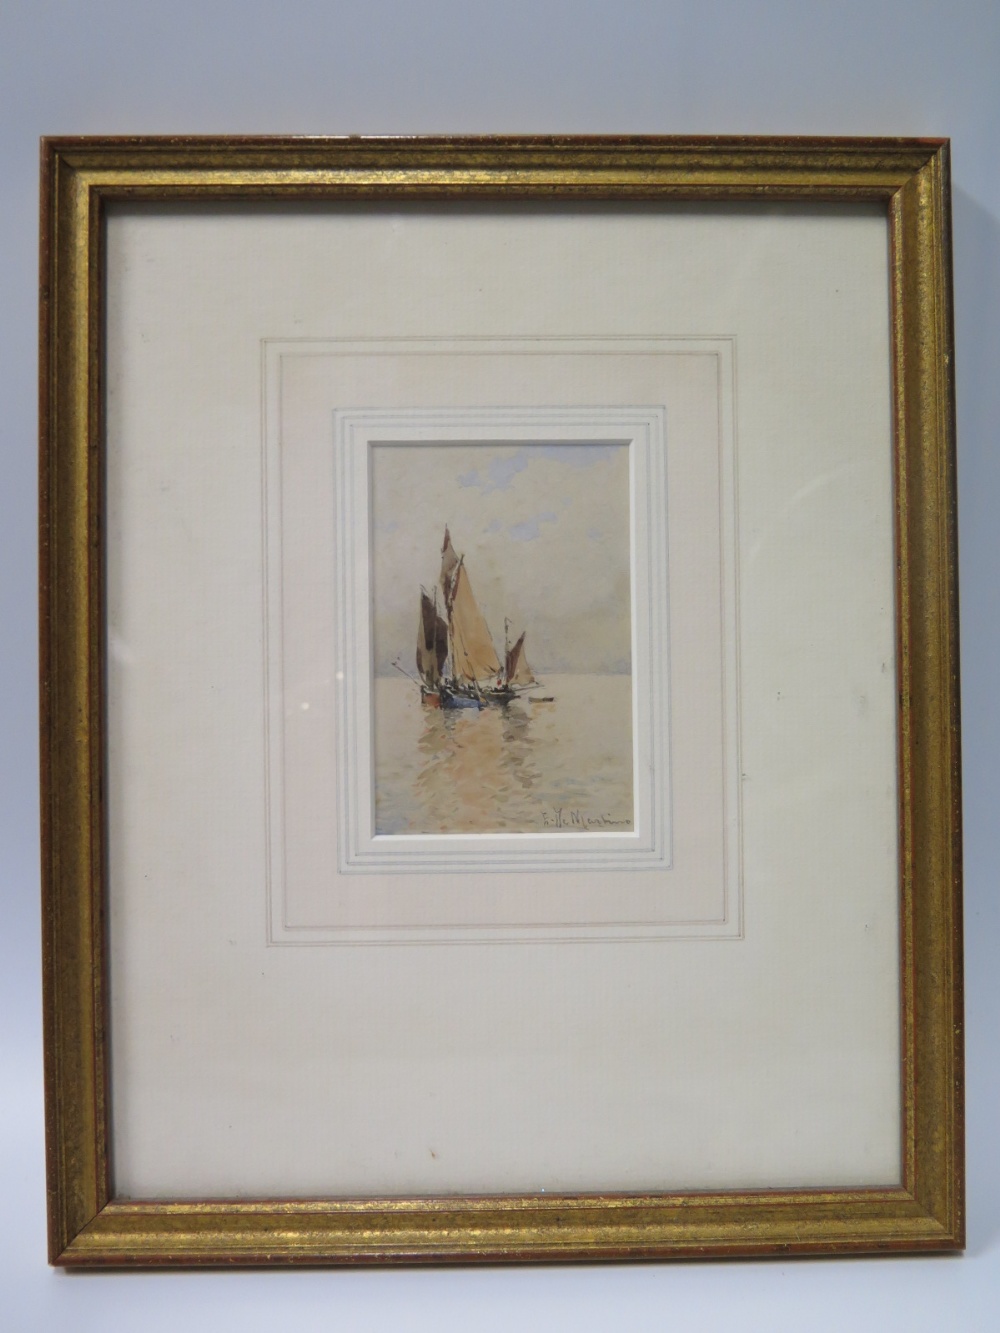 Chevalier Edwardo De Martino, Study of ketch on a calm sea, watercolour, 10.5 x 7cm, calling card